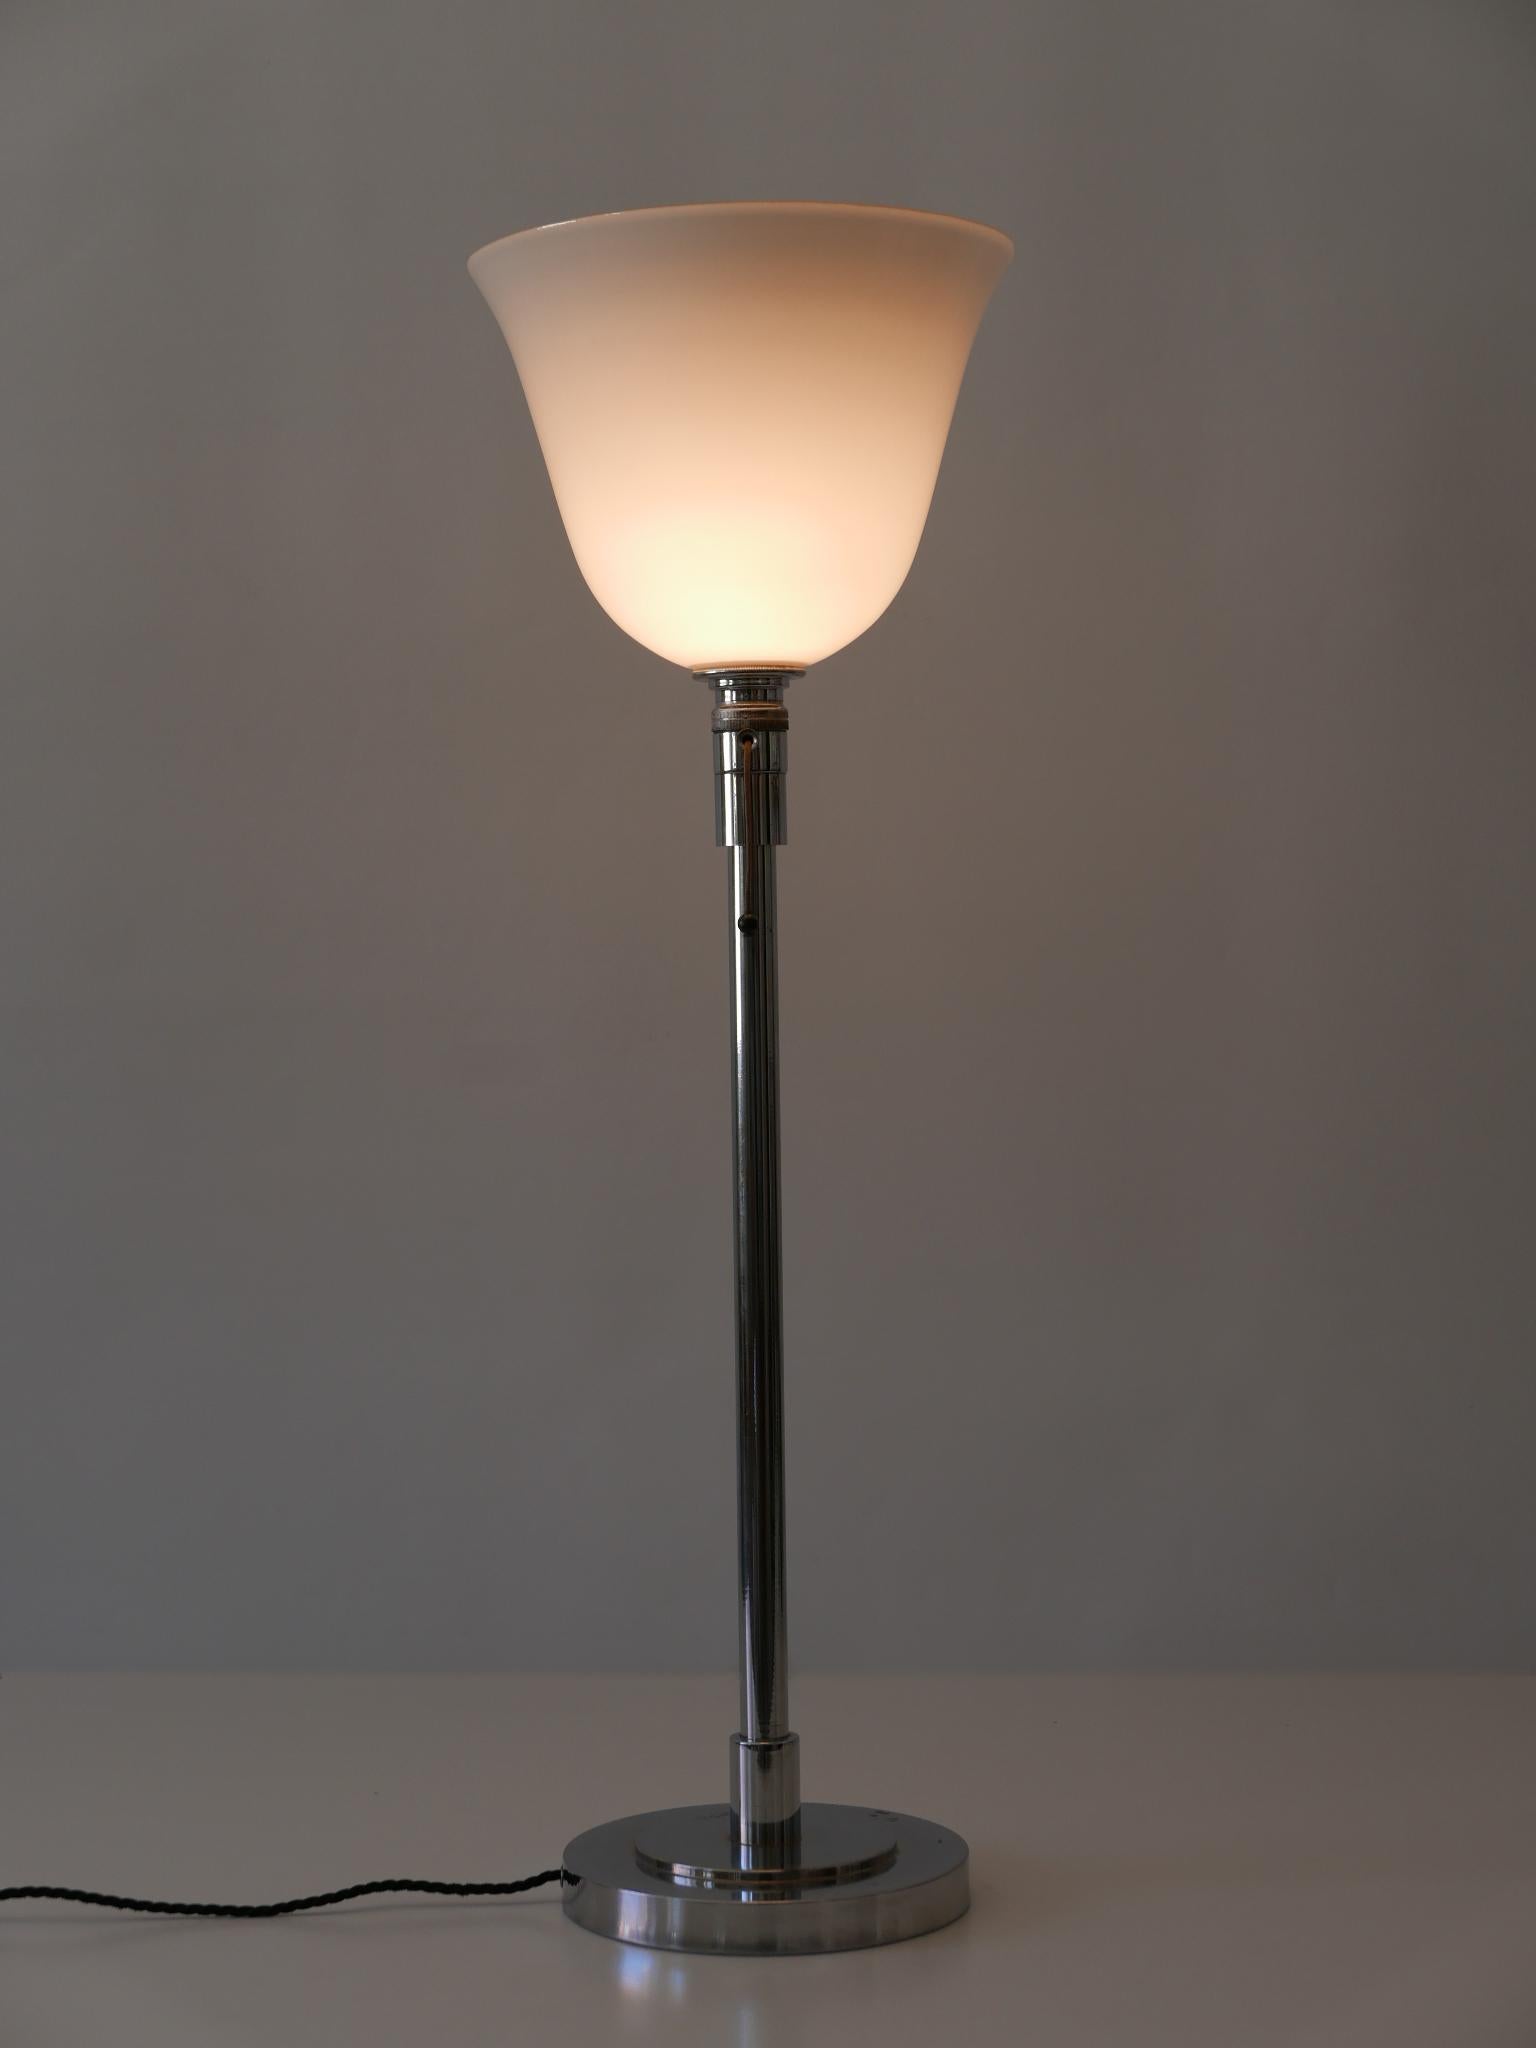 Elegant lampadaire ou lampe de table Art Deco / Bauhaus. Conçu et fabriqué par Mazda, 1930, Paris, France.

Réalisée en laiton nickelé et en verre opalin, la lampe nécessite une ampoule à vis Edison E27 / E 26. Elle est câblée et en état de